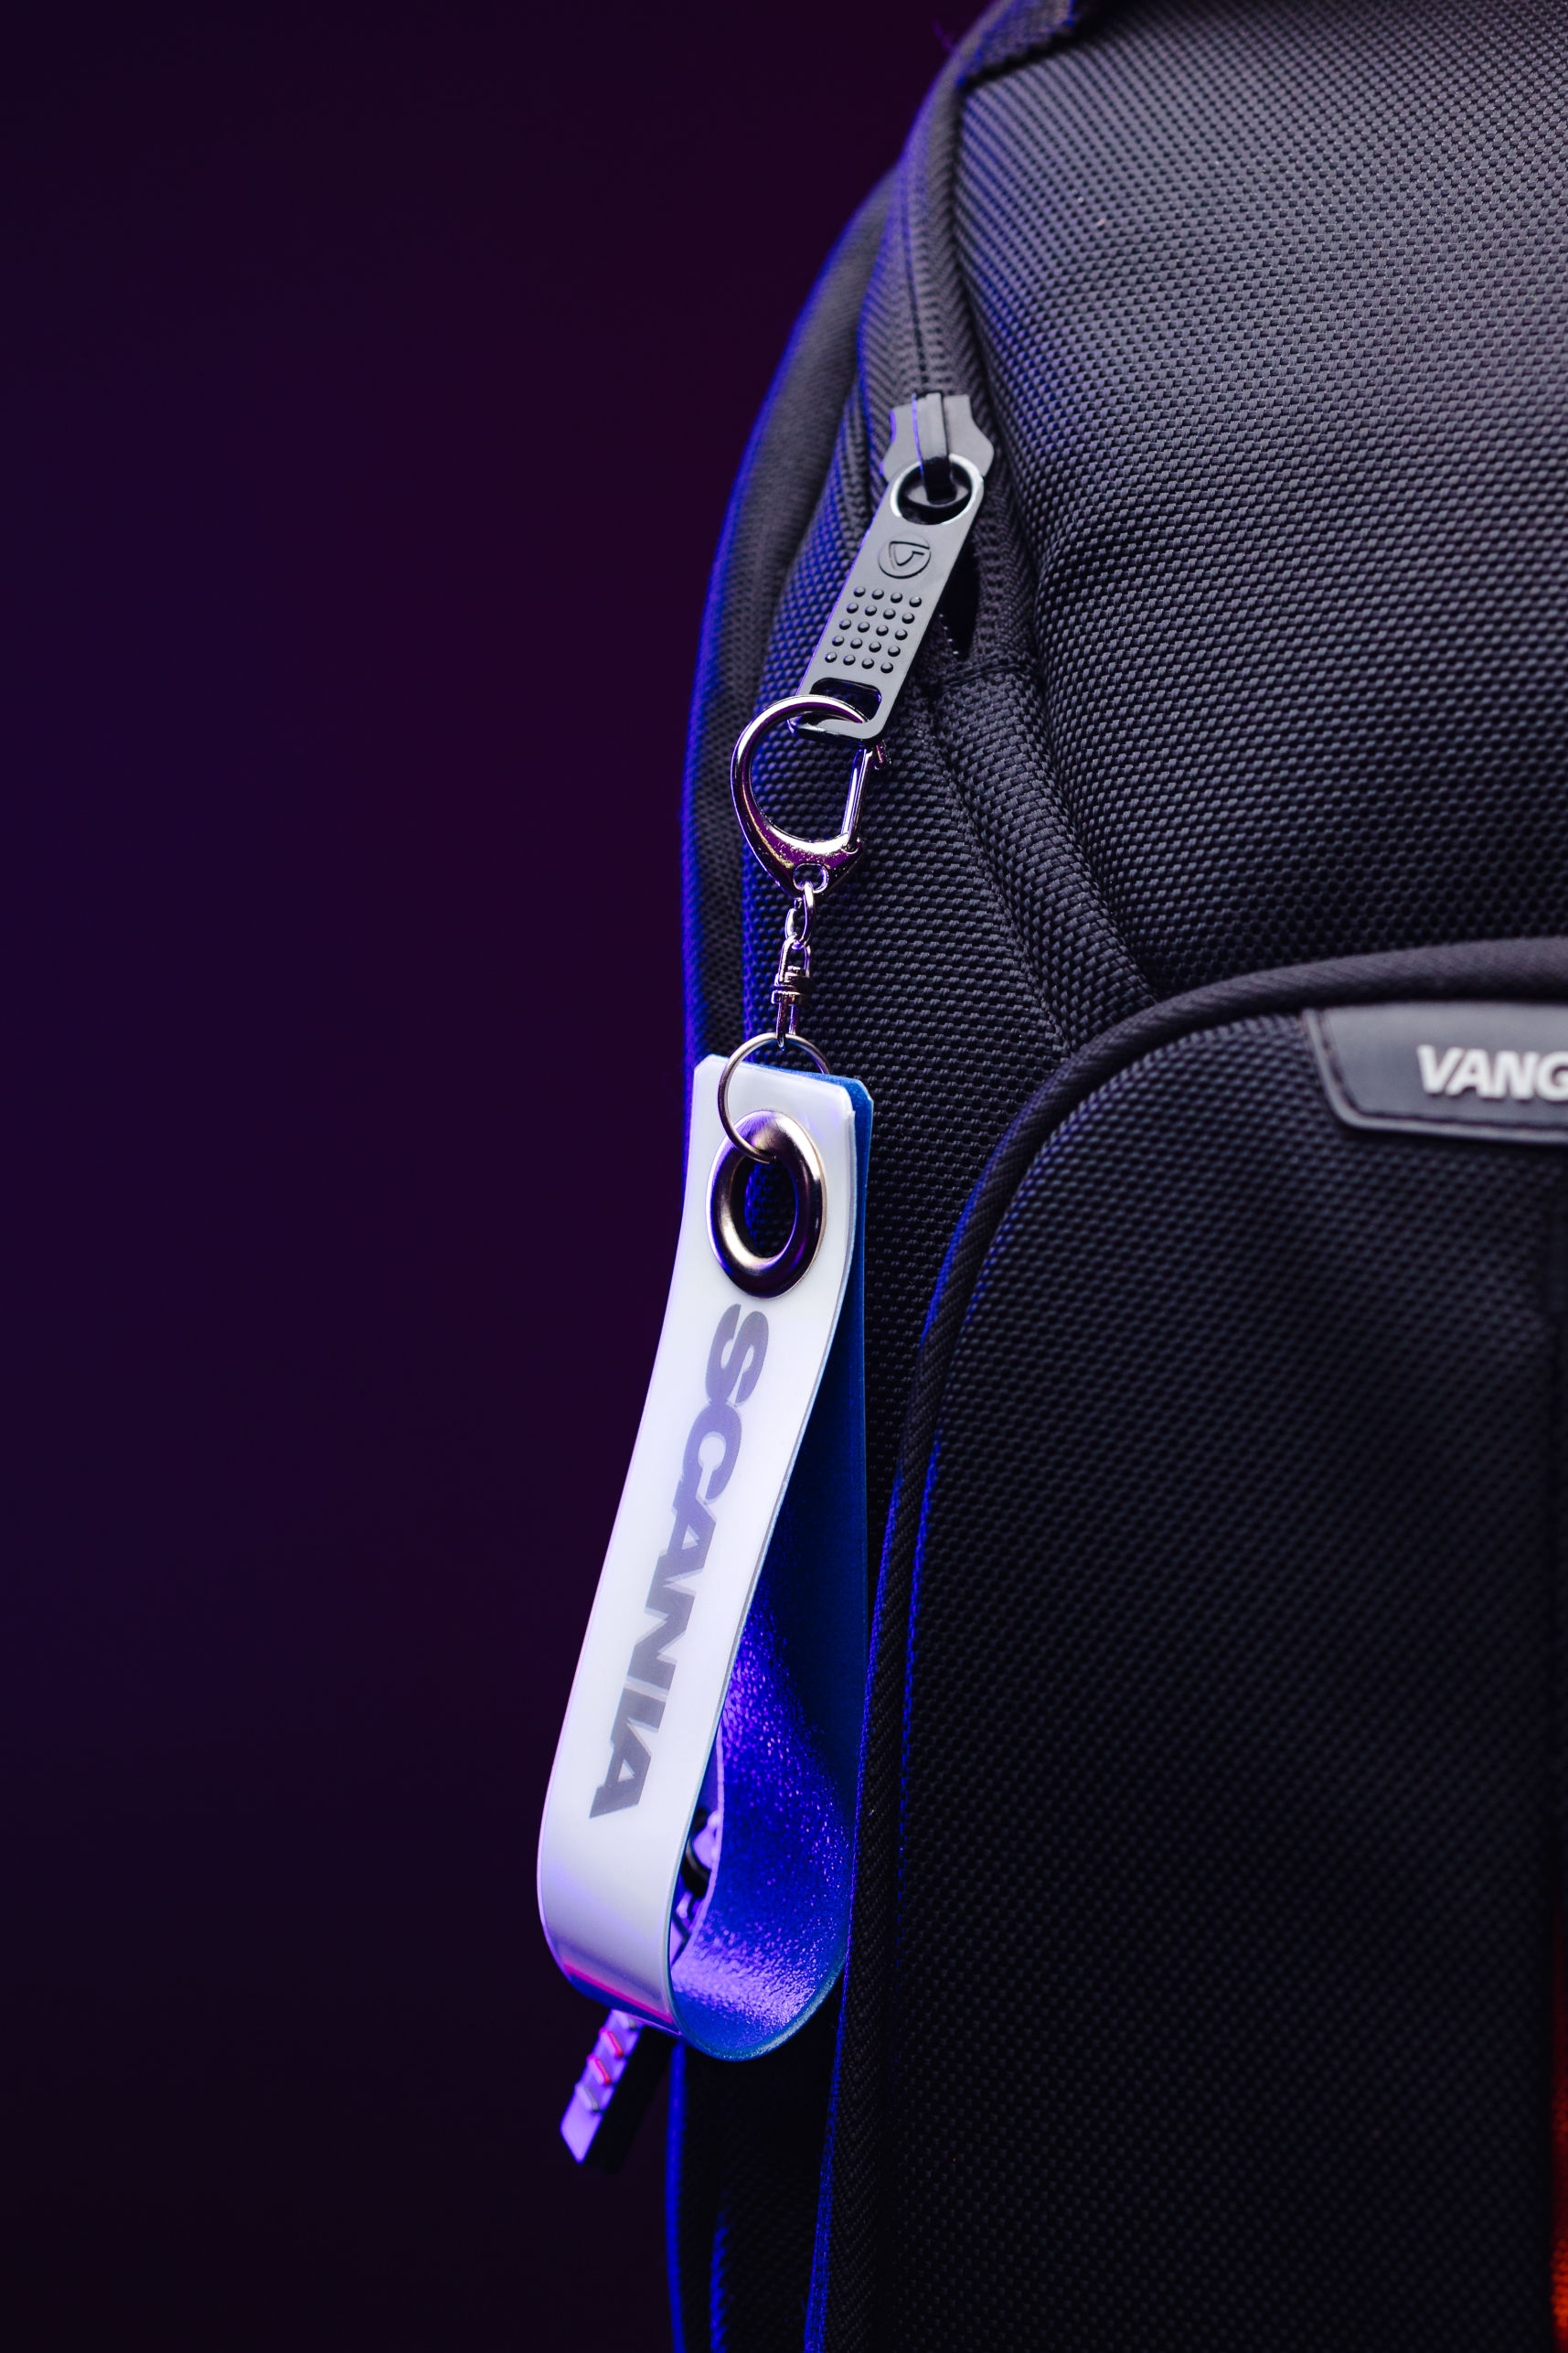 Branded reflective loop strap on bag